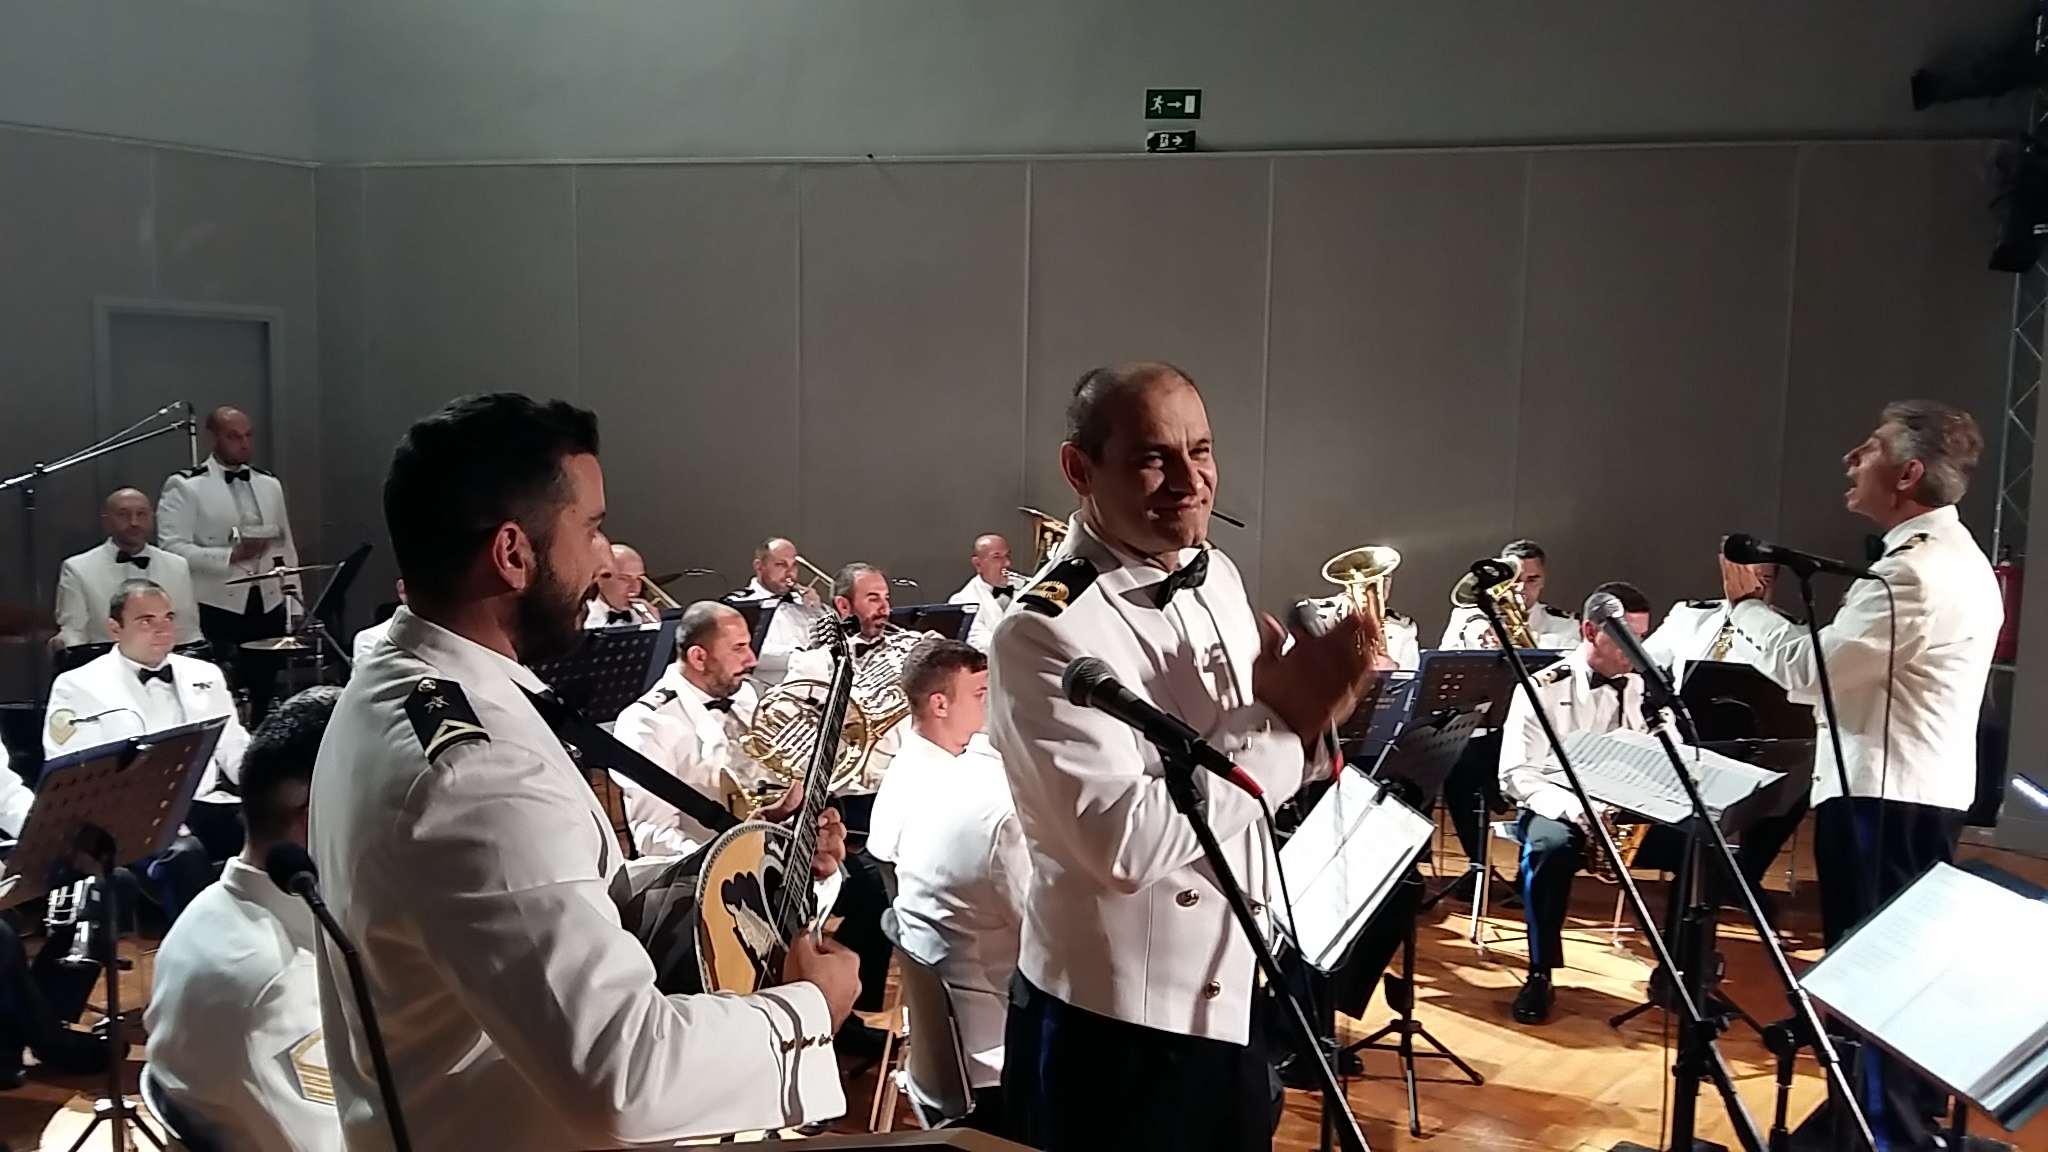 Μια μοναδική βραδιά πρόσφερε η ορχήστρα του Πολεμικού Ναυτικού στα Χανιά